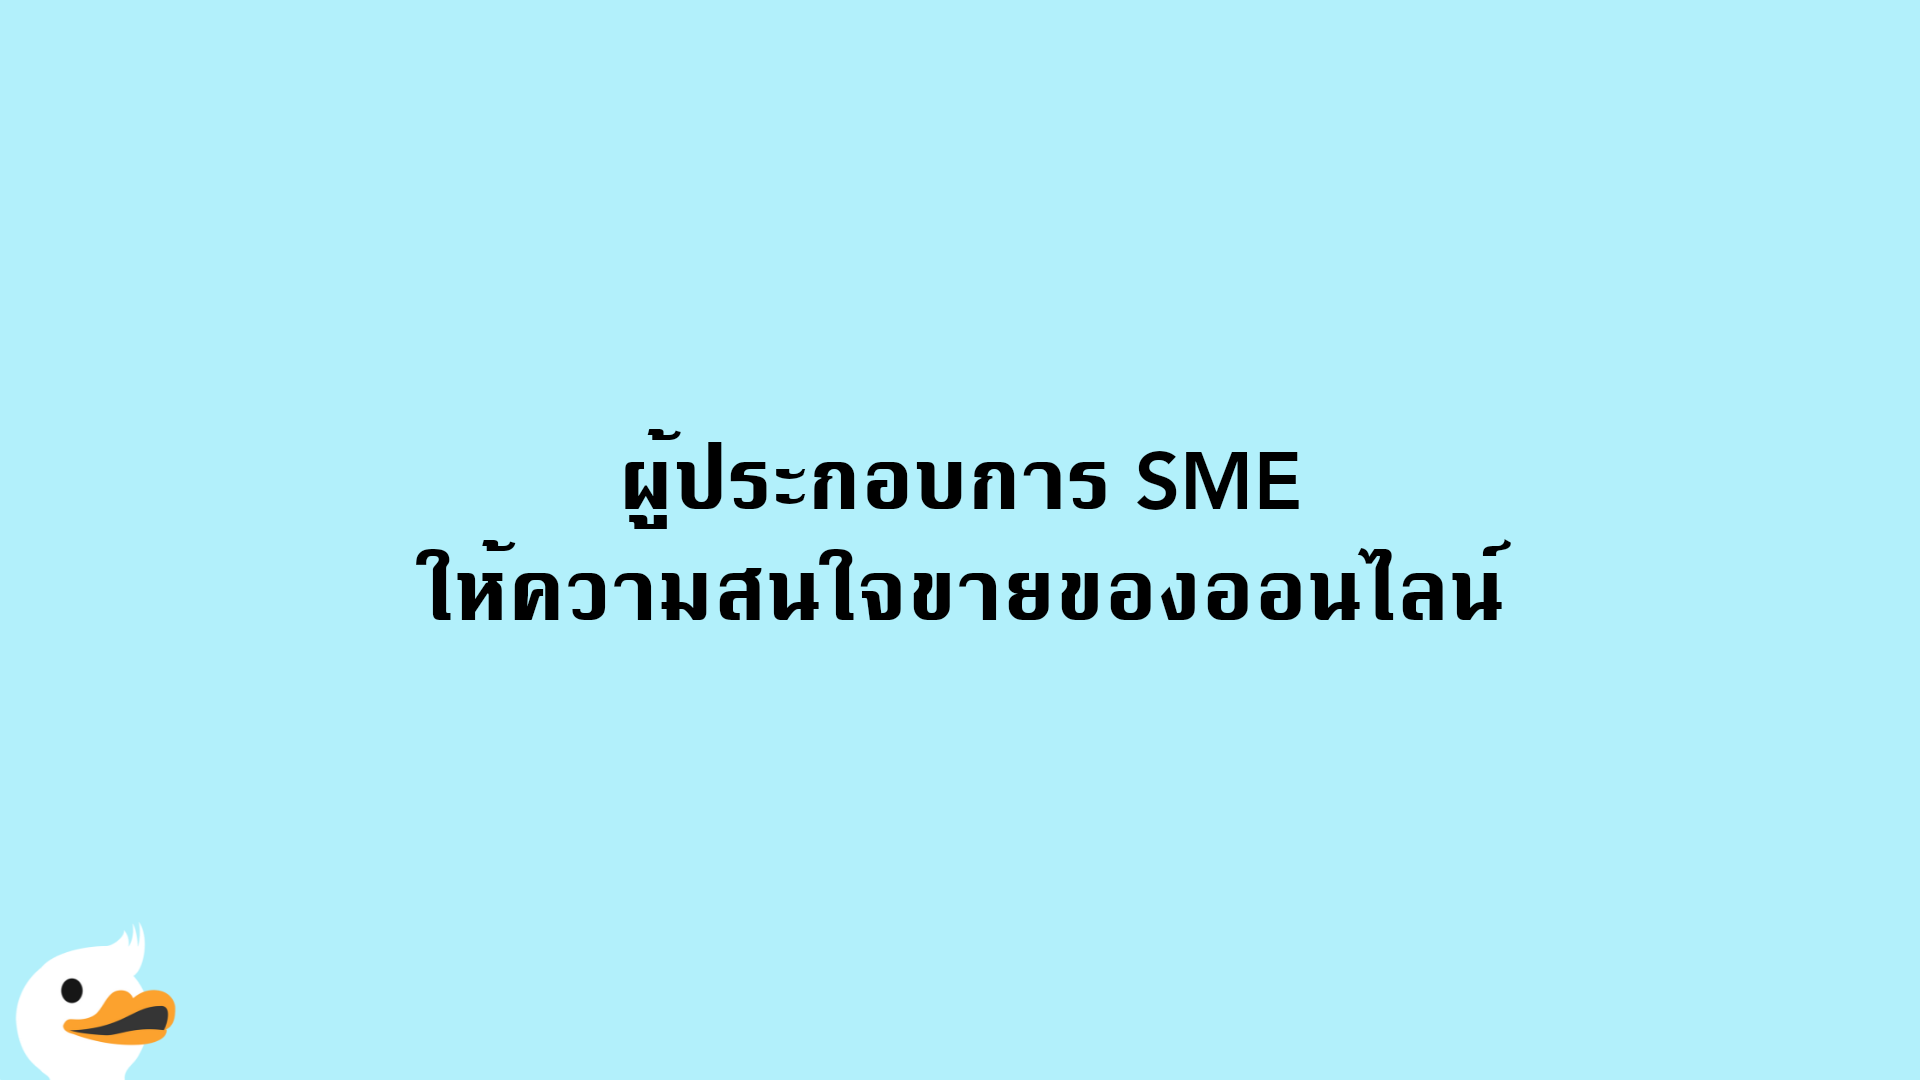 ผู้ประกอบการ SME ให้ความสนใจขายของออนไลน์